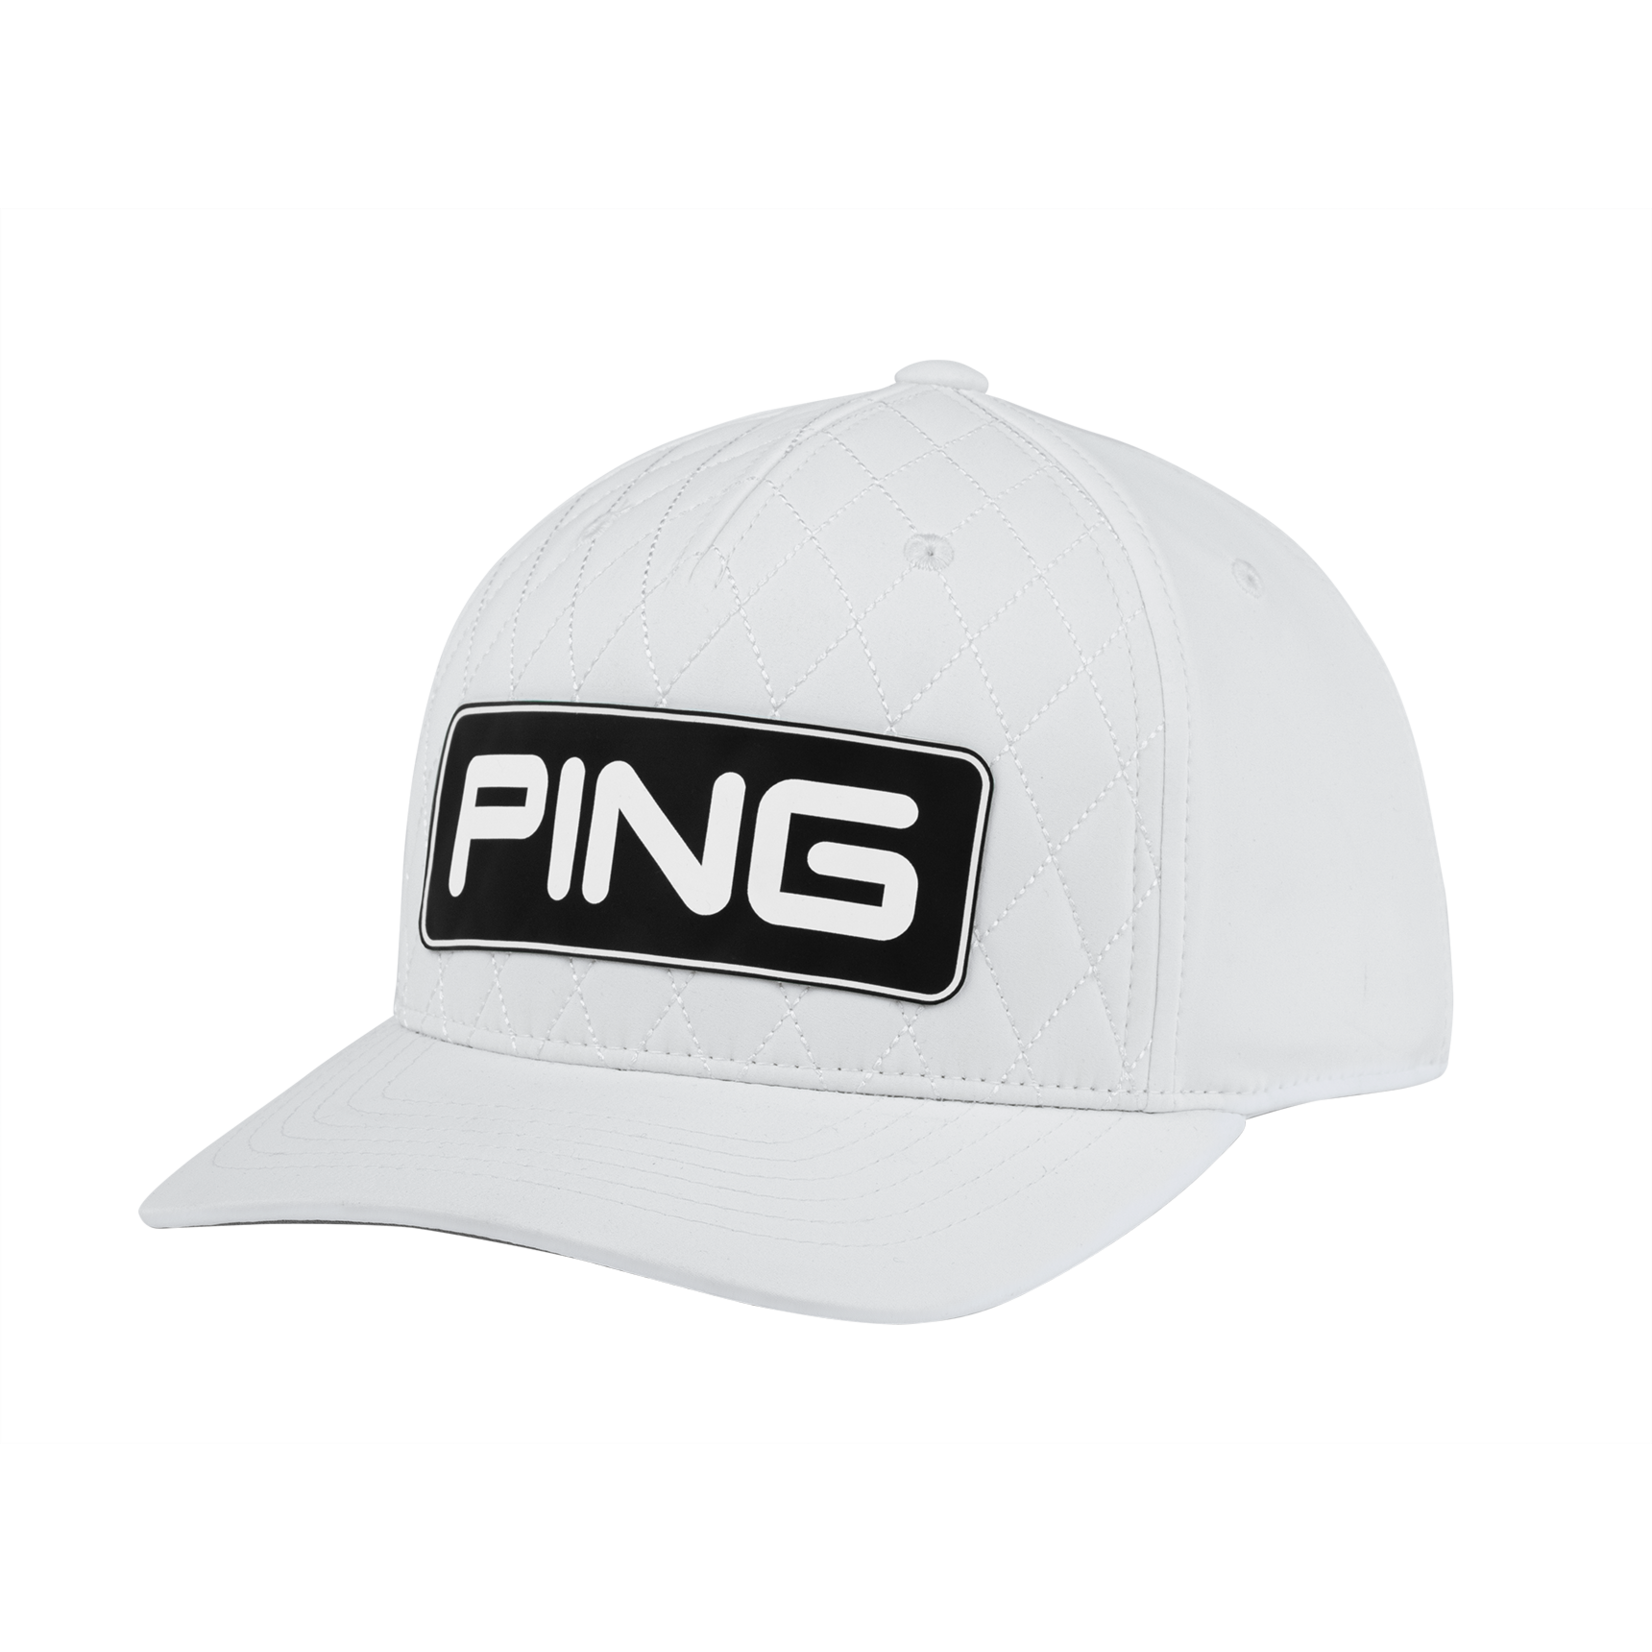 Ping PING Heritage LTD Cap